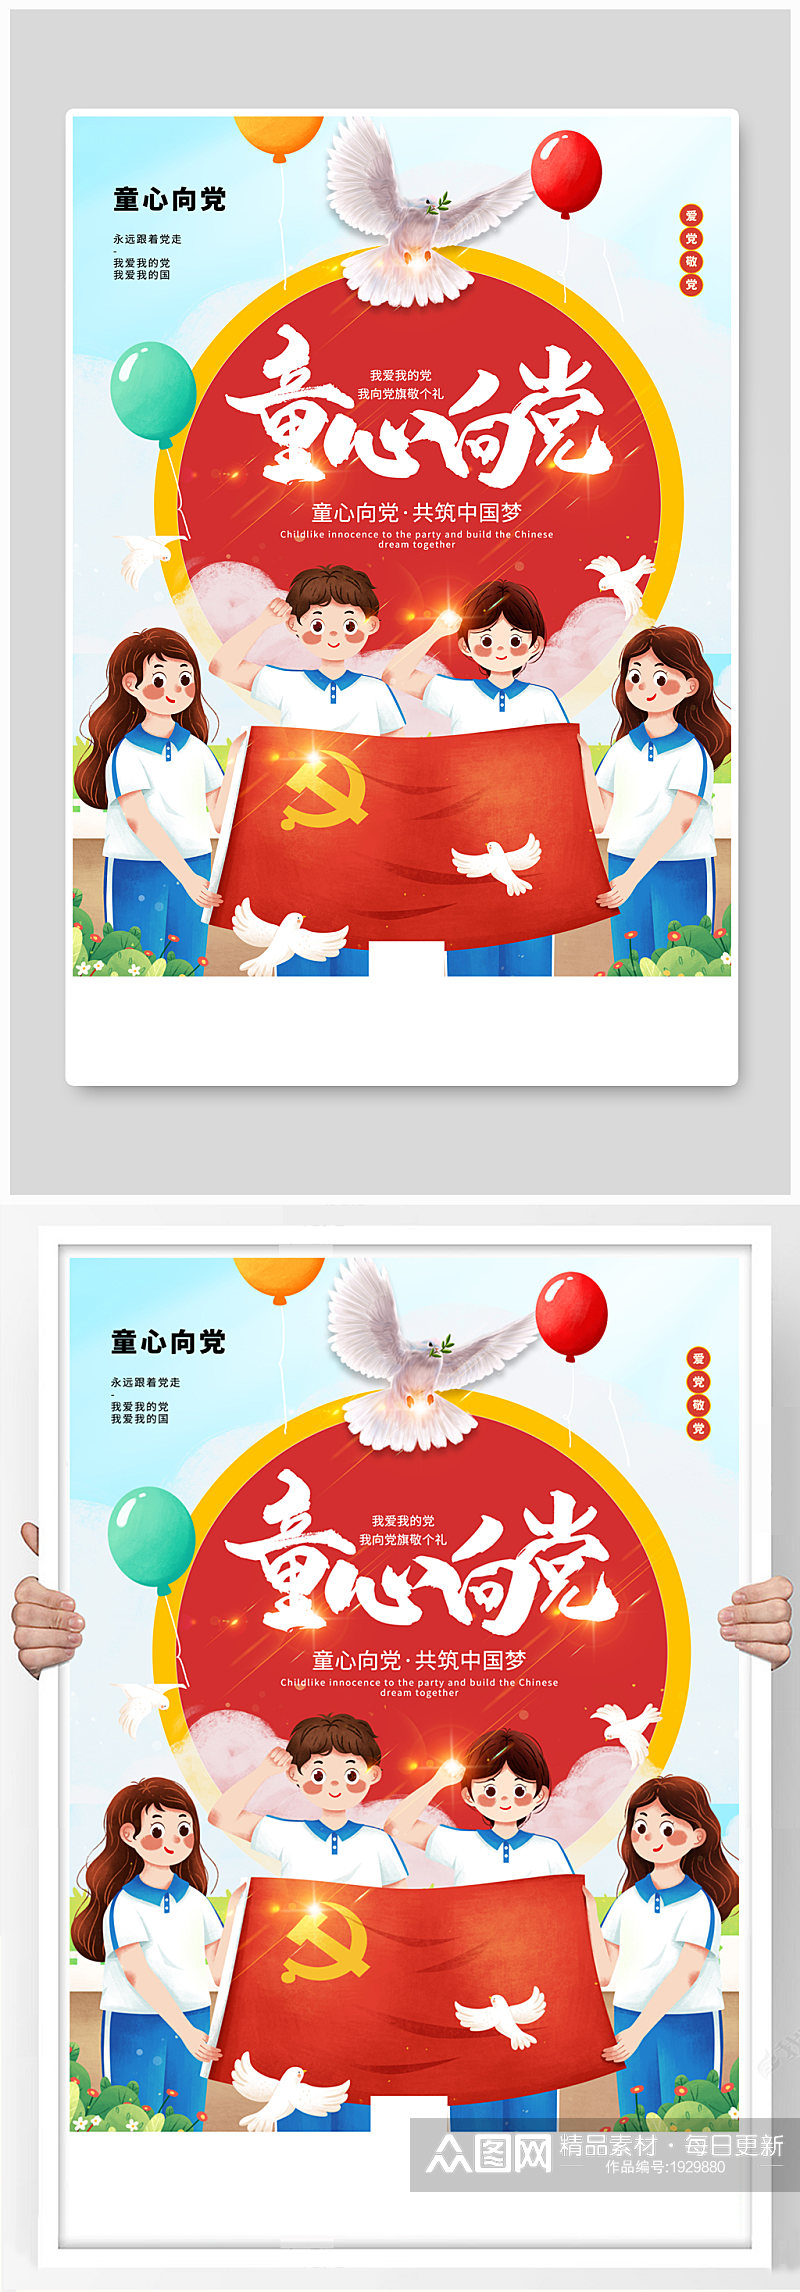 插画风童心向党共筑中国梦主题海报素材